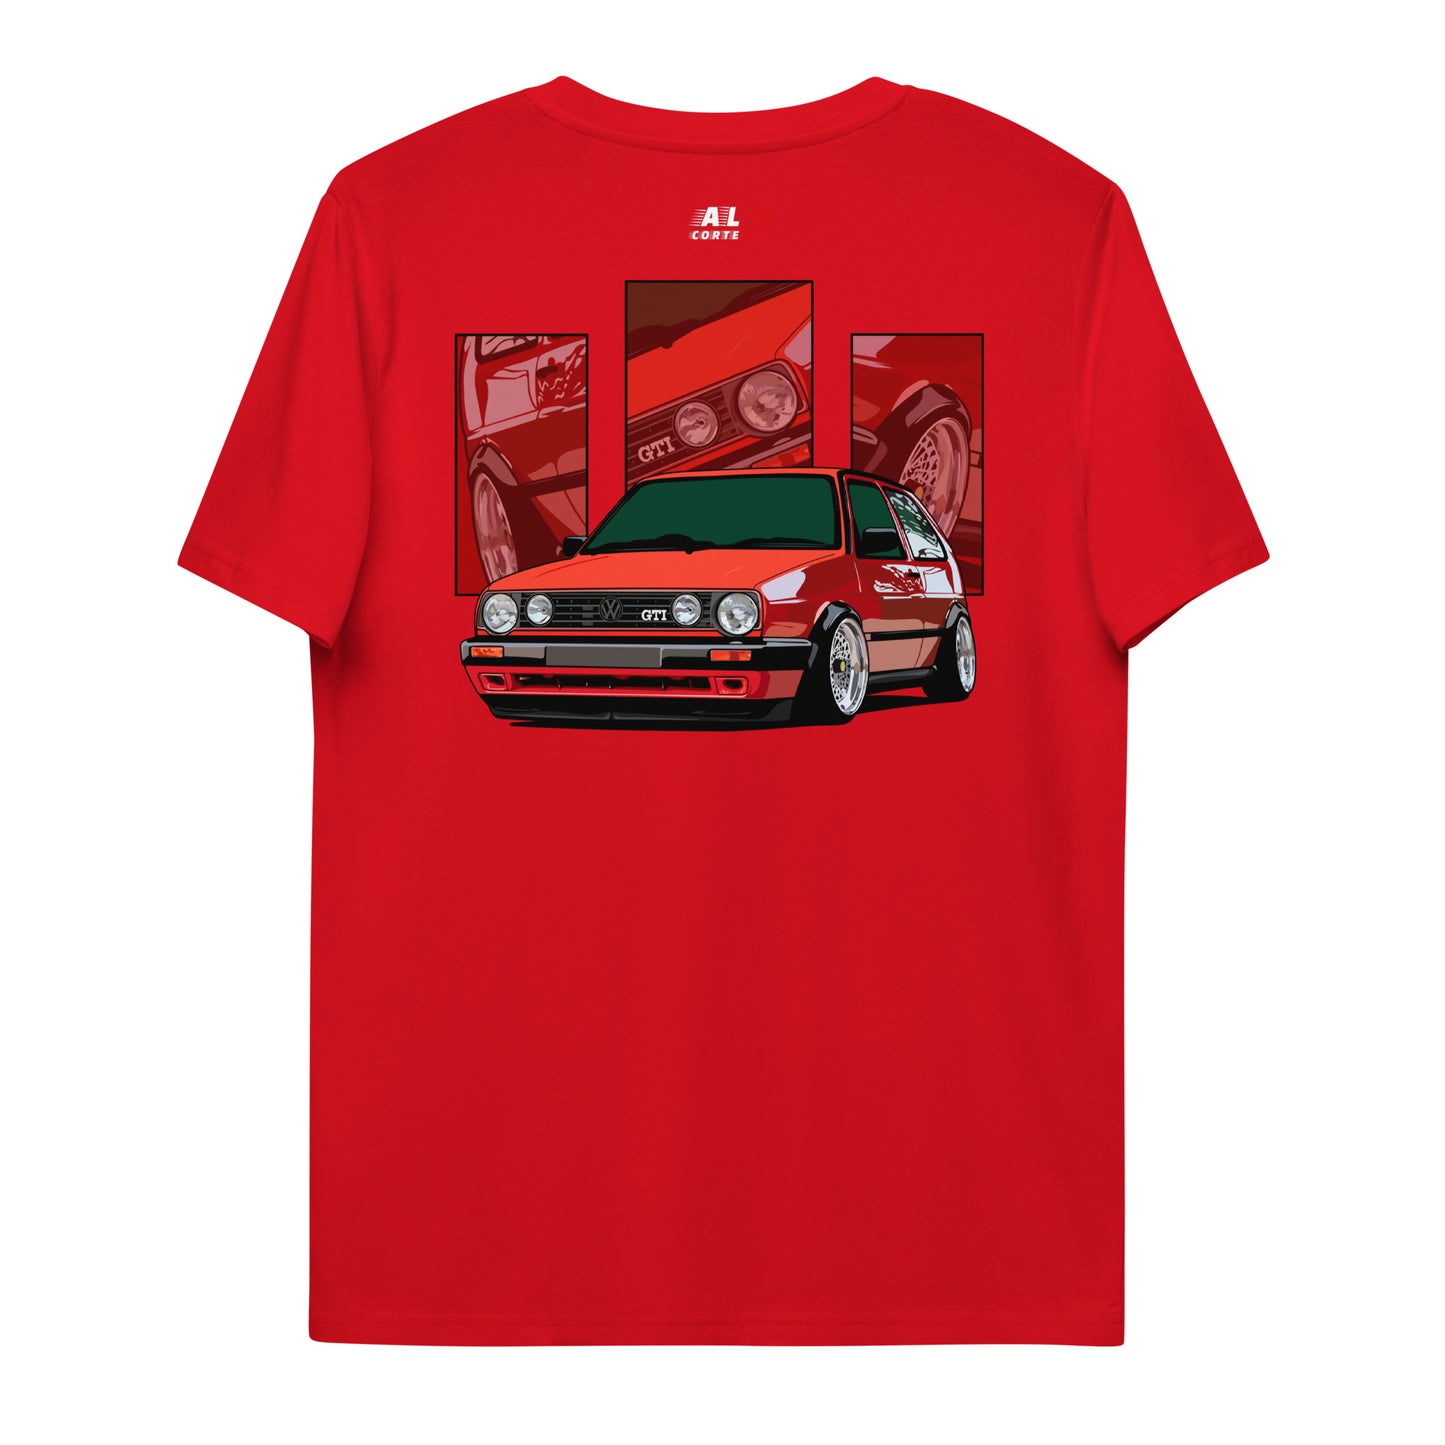 Camiseta Golf 2 GTI